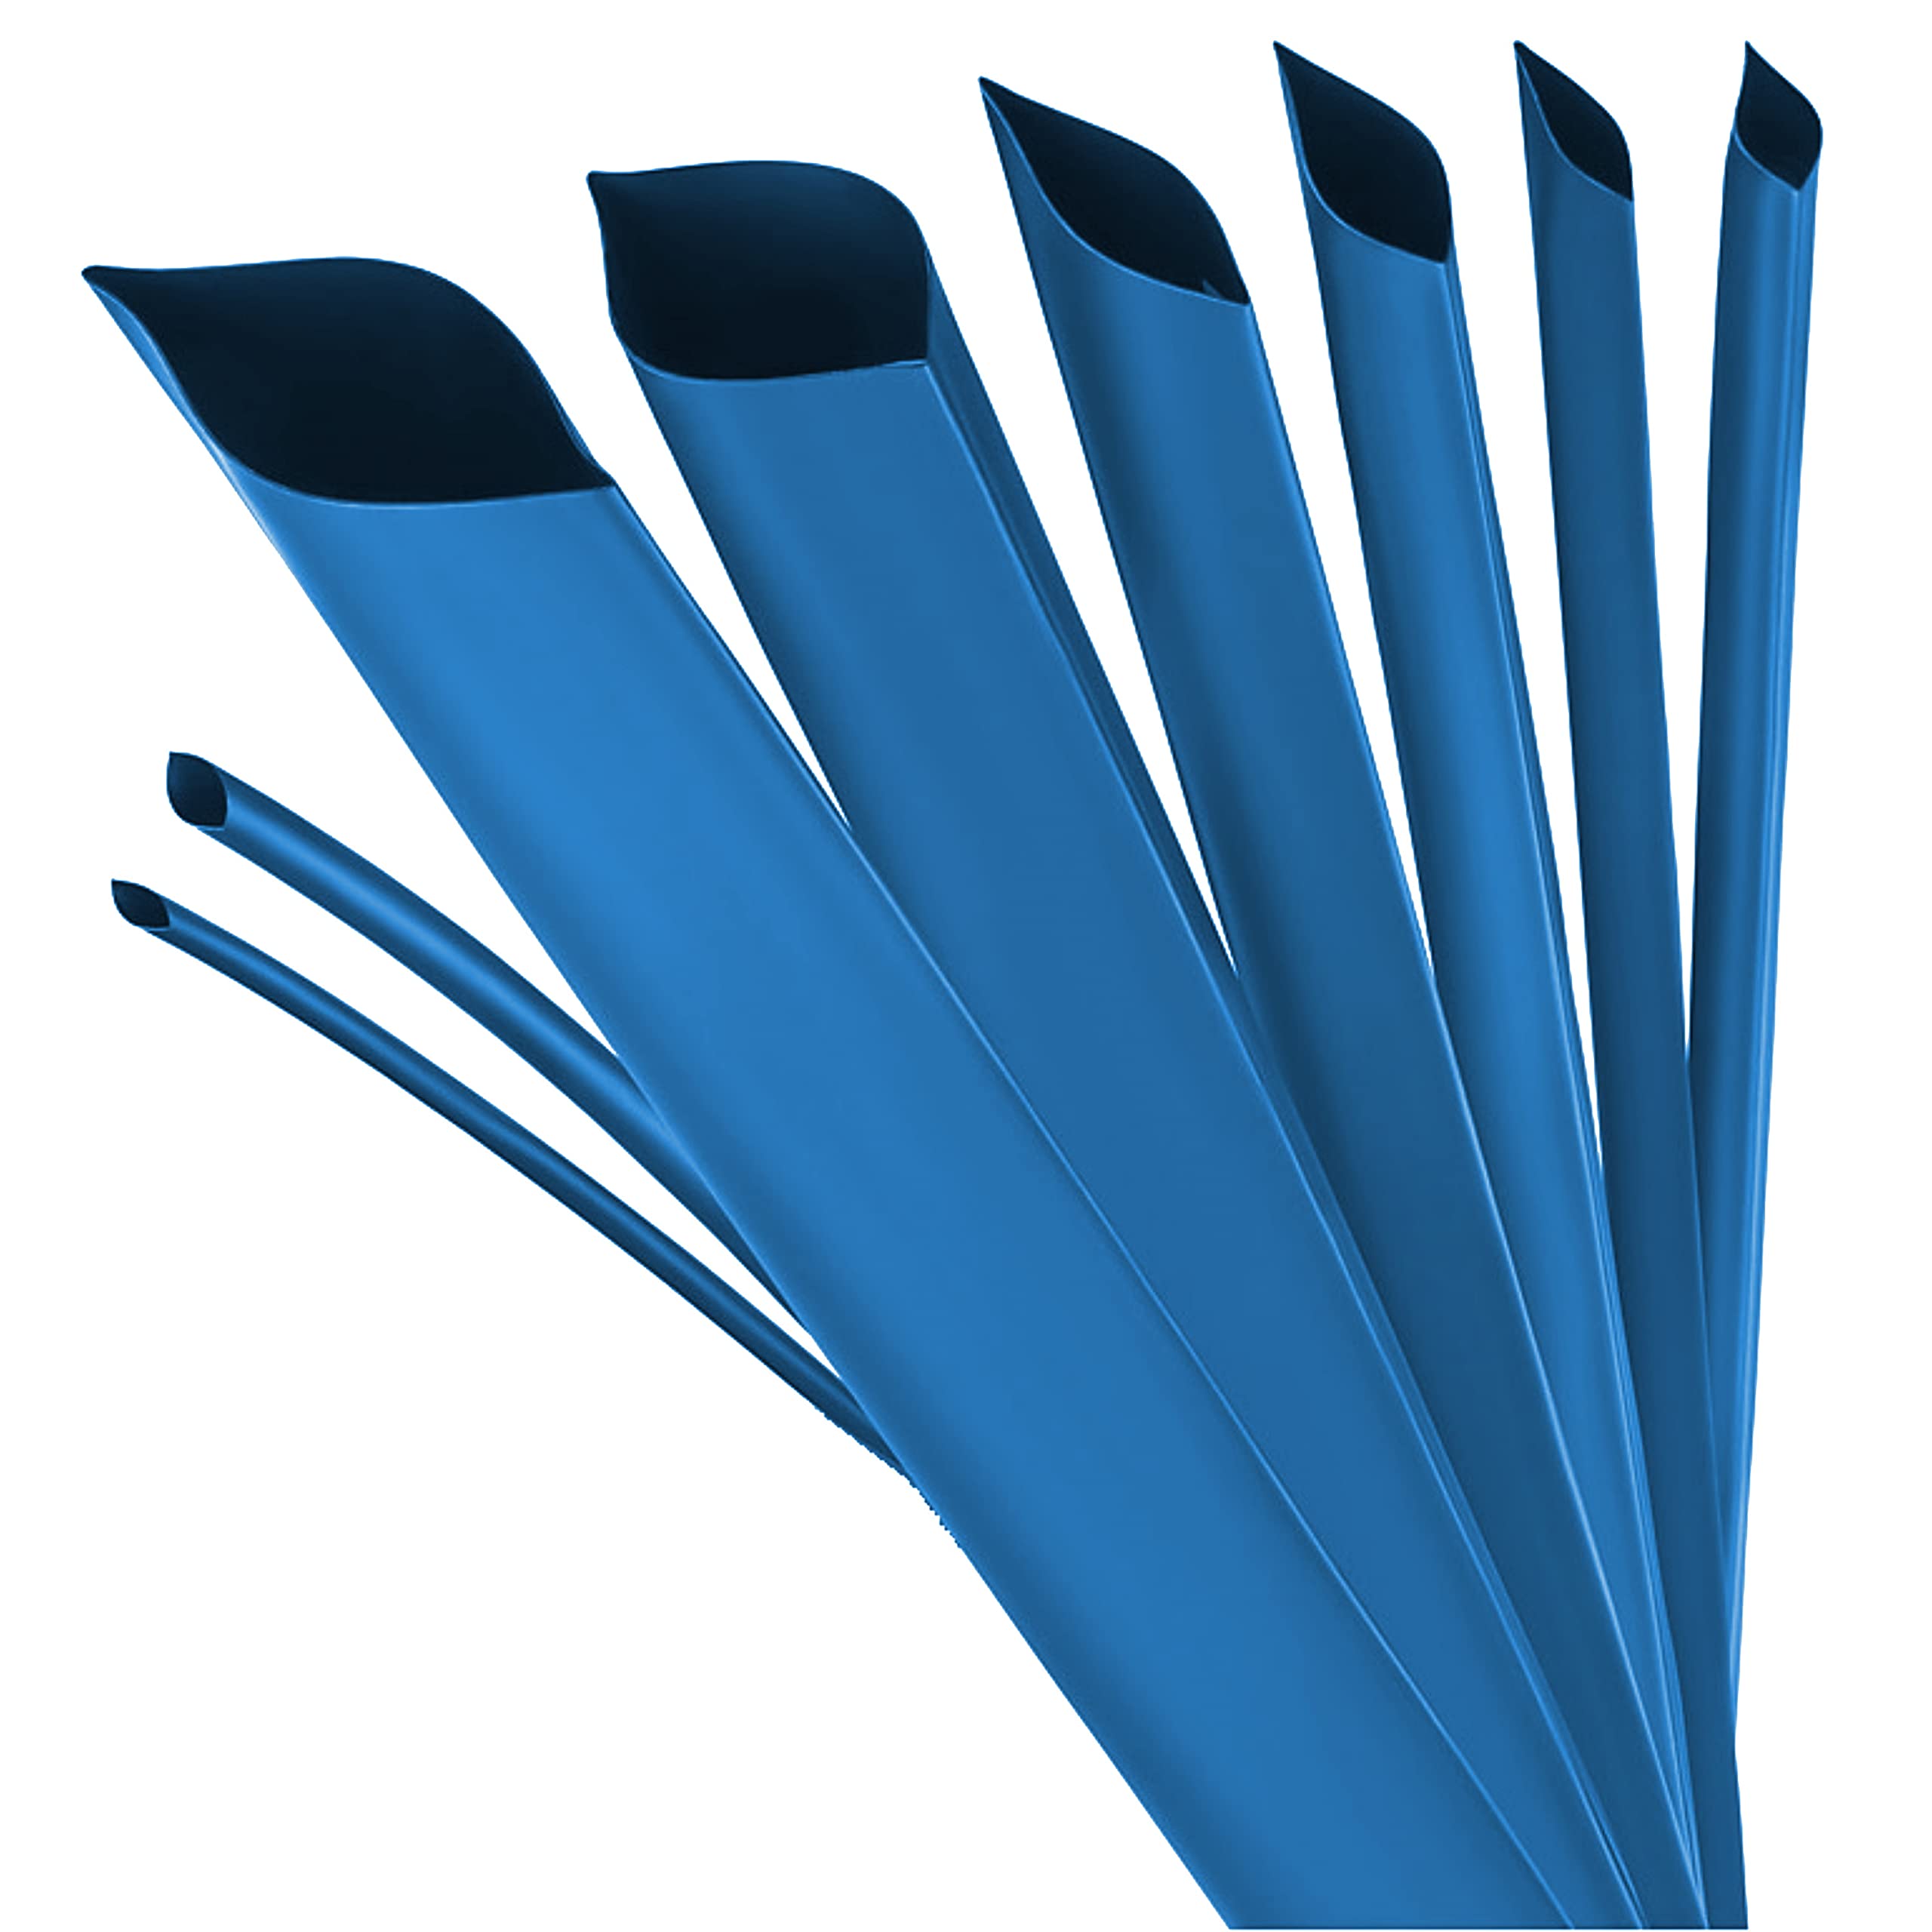 ISOLATECH Schrumpfschlauch Meterware blau mit Kleber Ø 40mm 10 Meter Schrumpfverhältnis 3:1 Set Polyolefin zum Isolieren von Kabel Lötverbindungen unbeschriftet UV beständig (Ø40mm 10Meter)